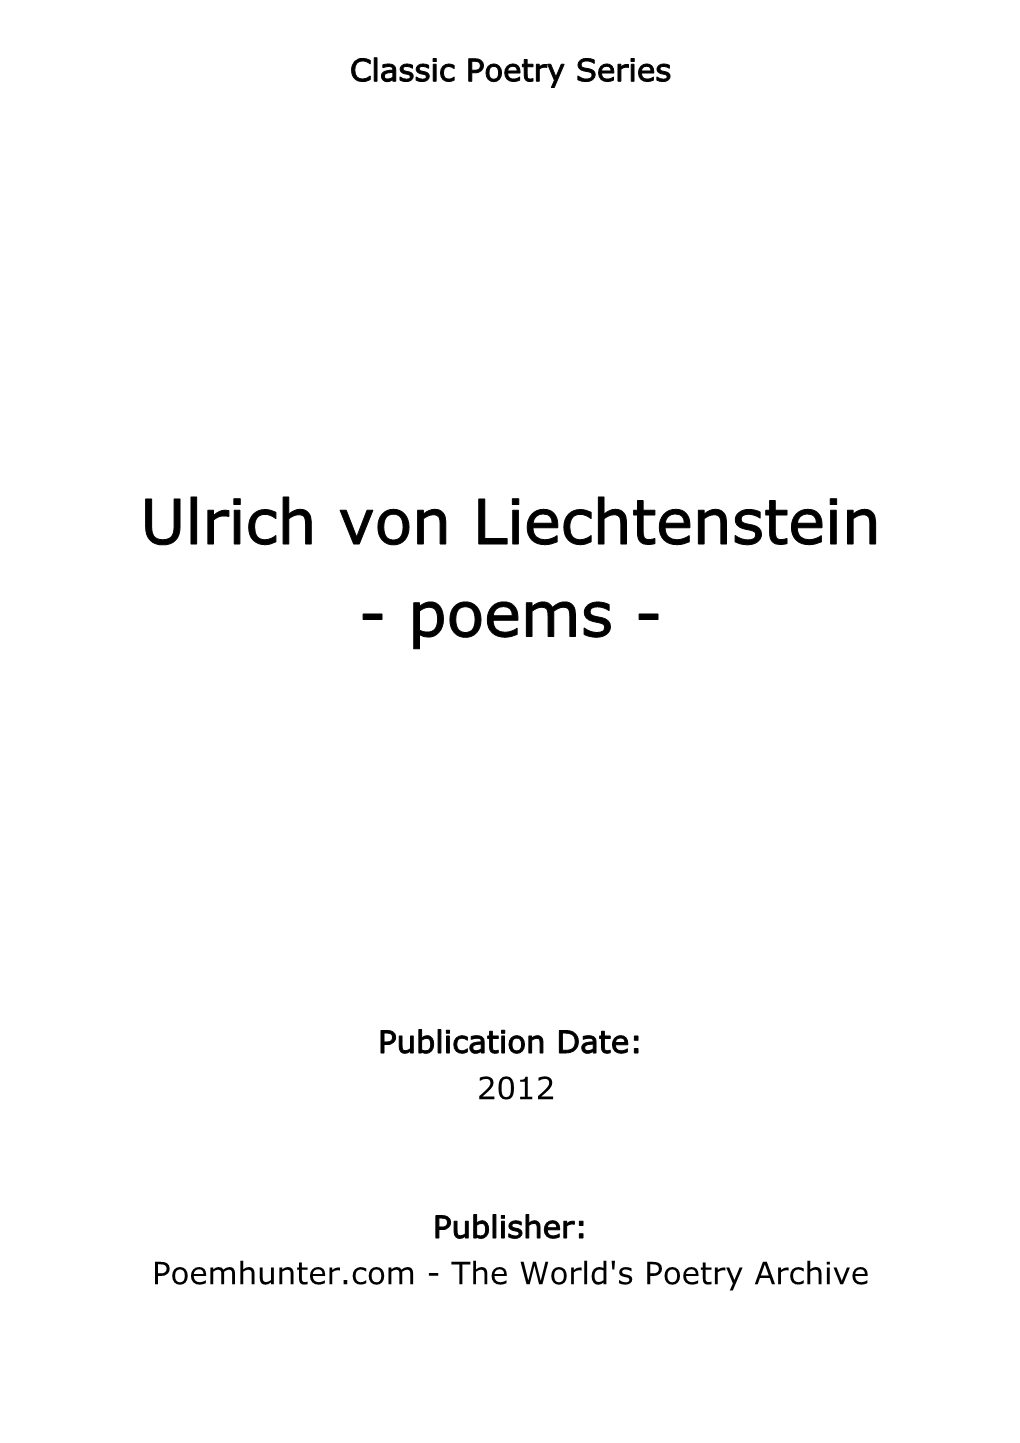 Ulrich Von Liechtenstein - Poems